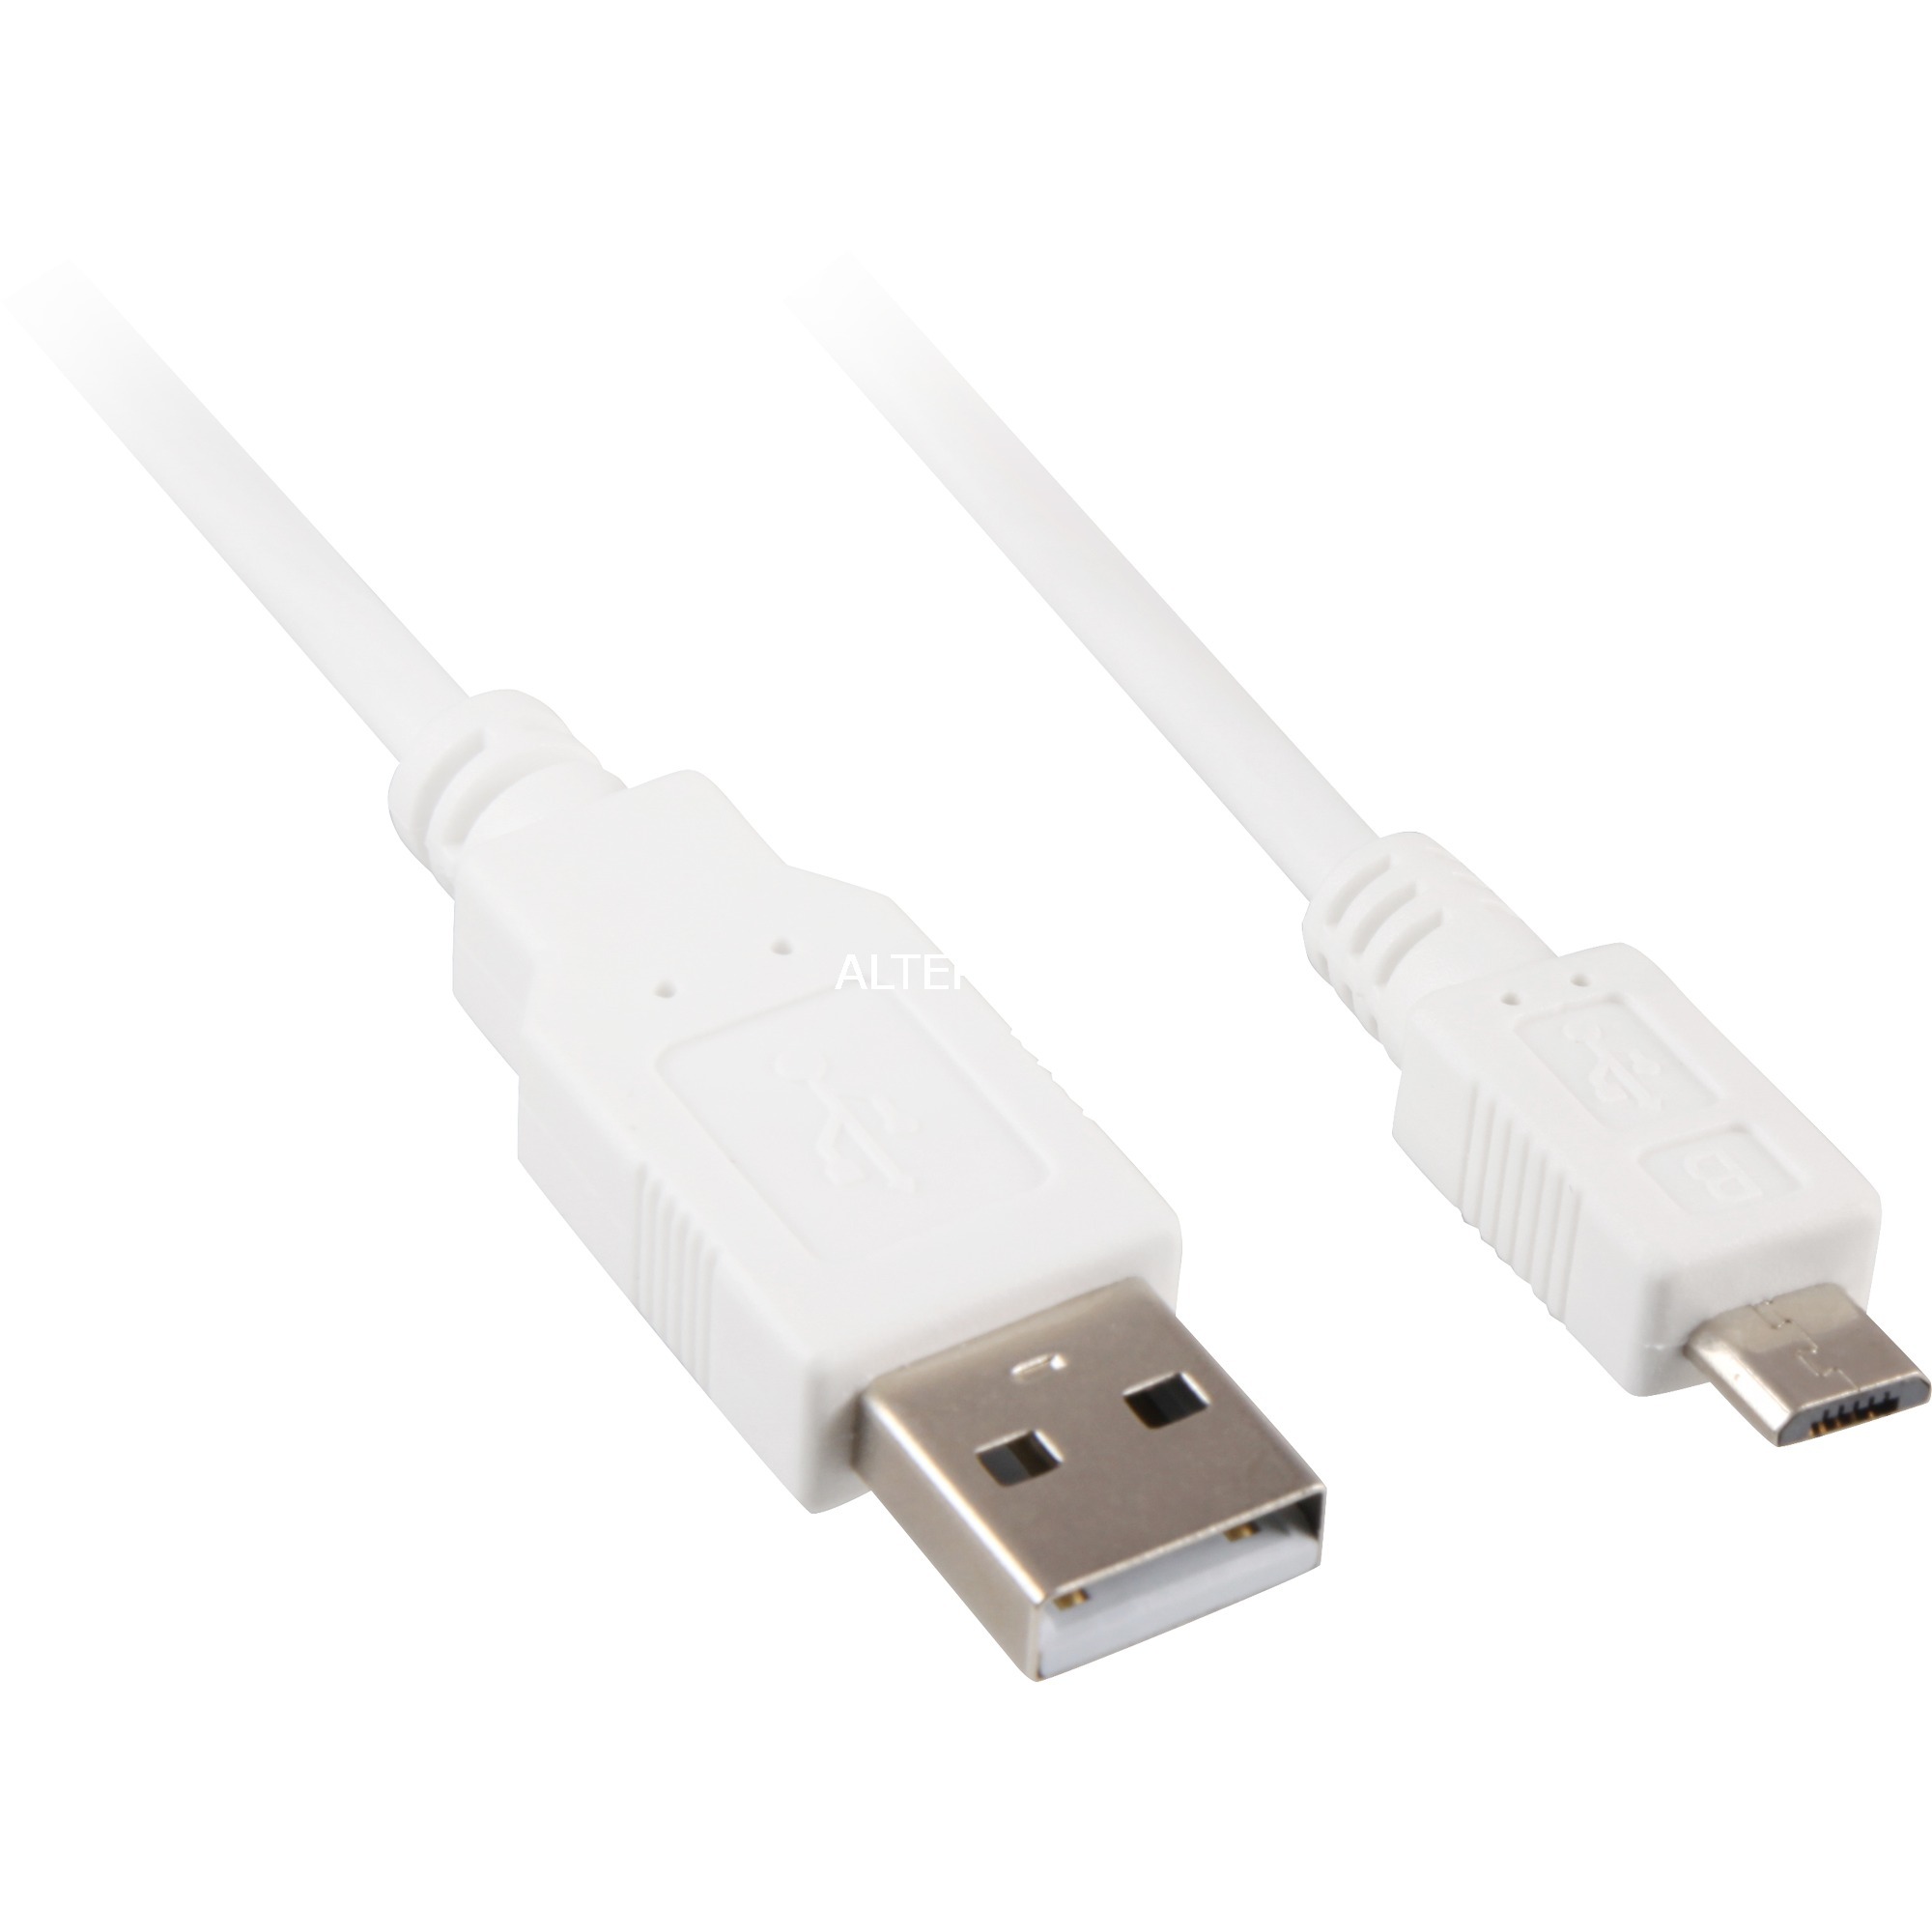 Image of Alternate - Kabel USB 2.0 A -> USB Micro-B online einkaufen bei Alternate